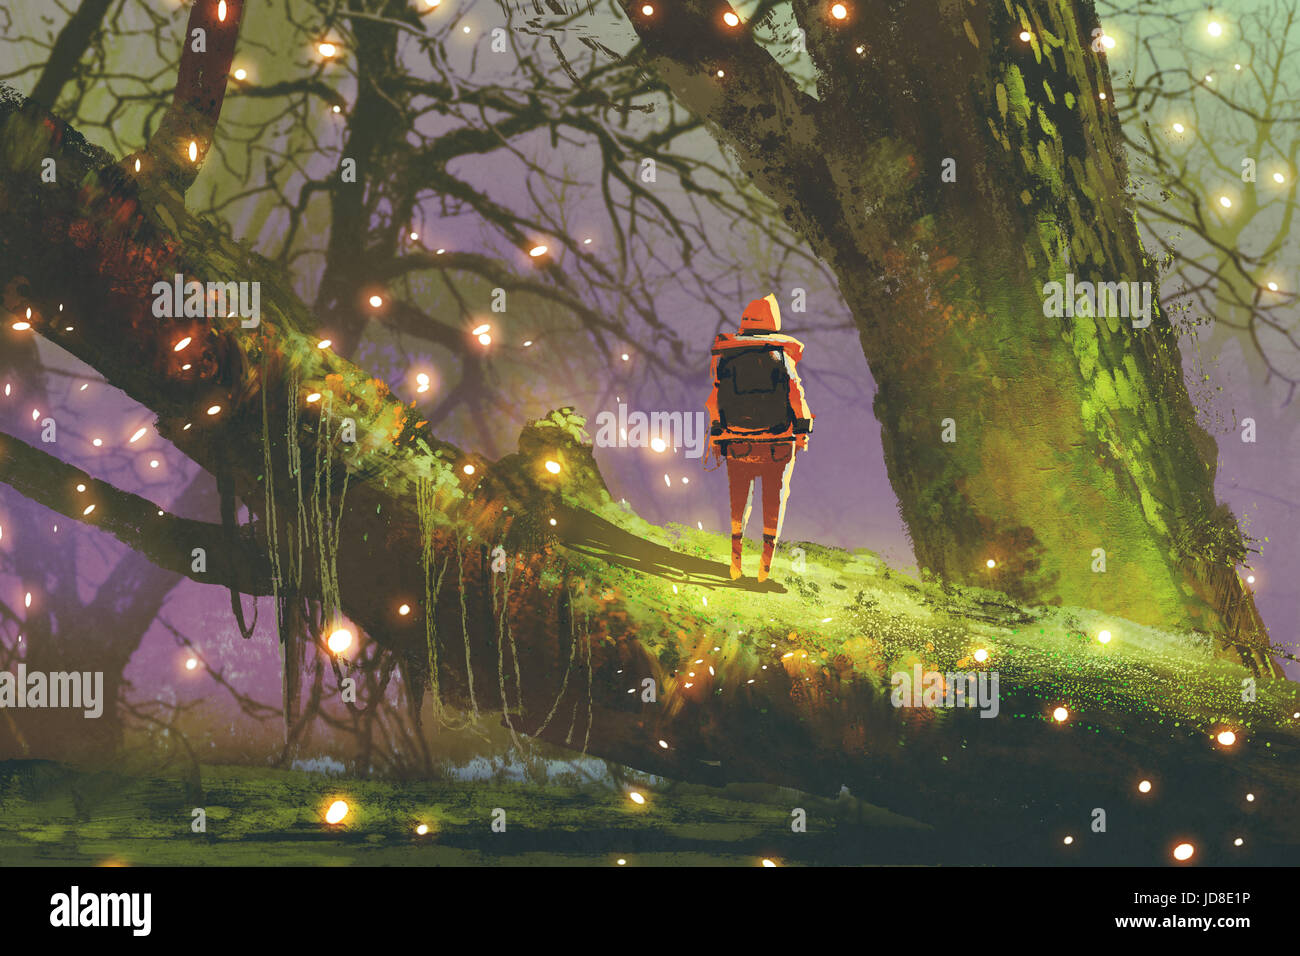 30 L'Aventure Lumineuse de la Luciole : Un Voyage Magique à Travers la  Forêt Enchantée ✨🌙 